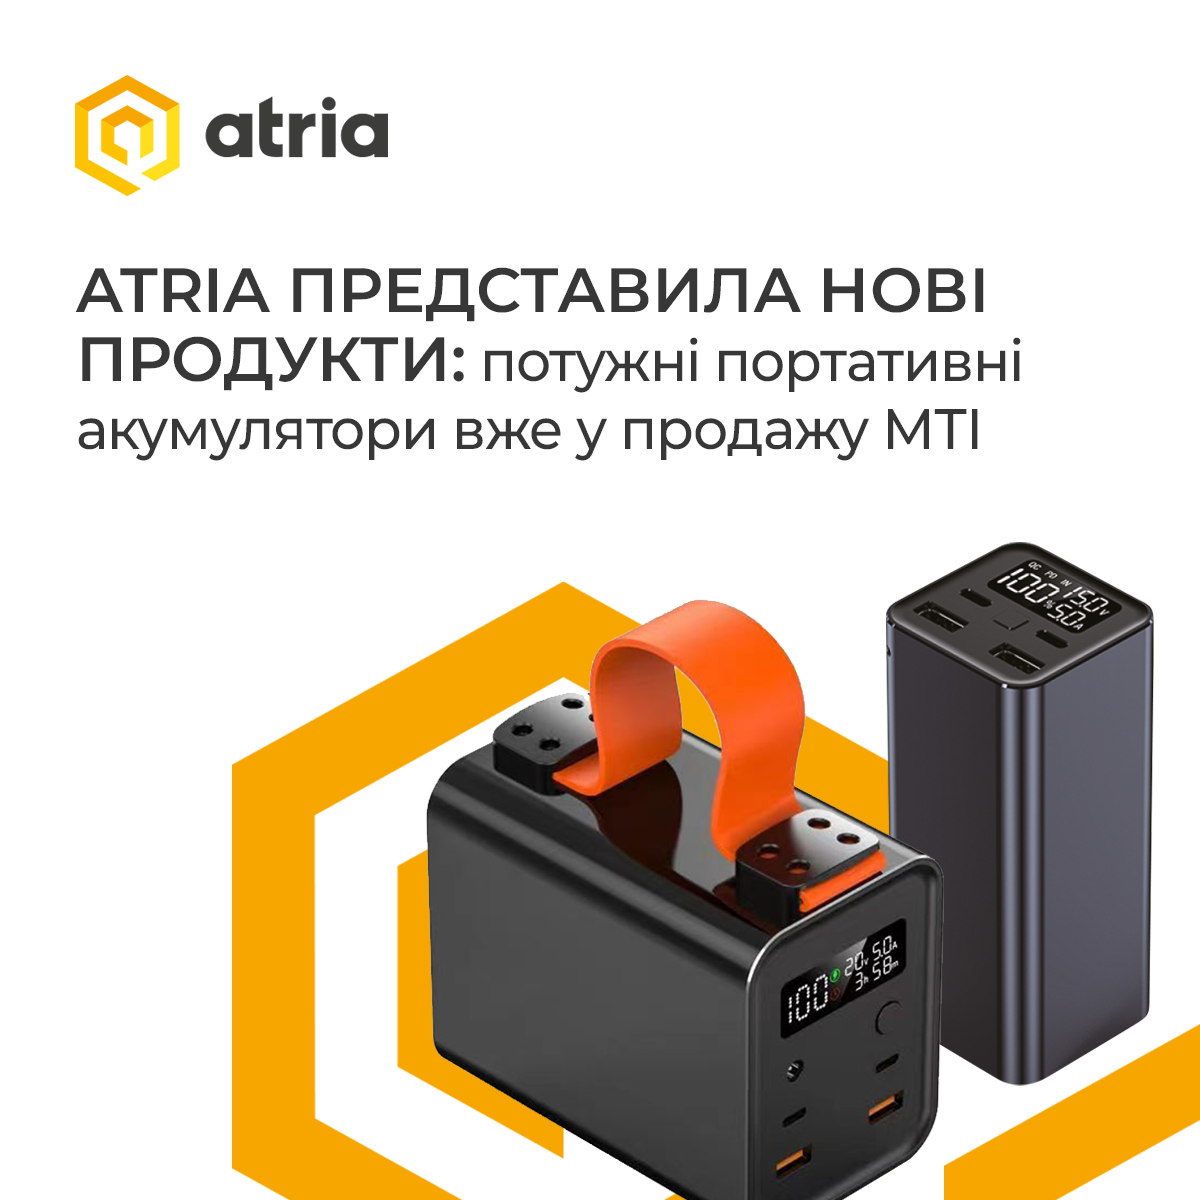 Розширення асортименту Atria: потужні портативні акумулятори для мобільності та енергонезалежності - tech, community, press-release, news, vijna